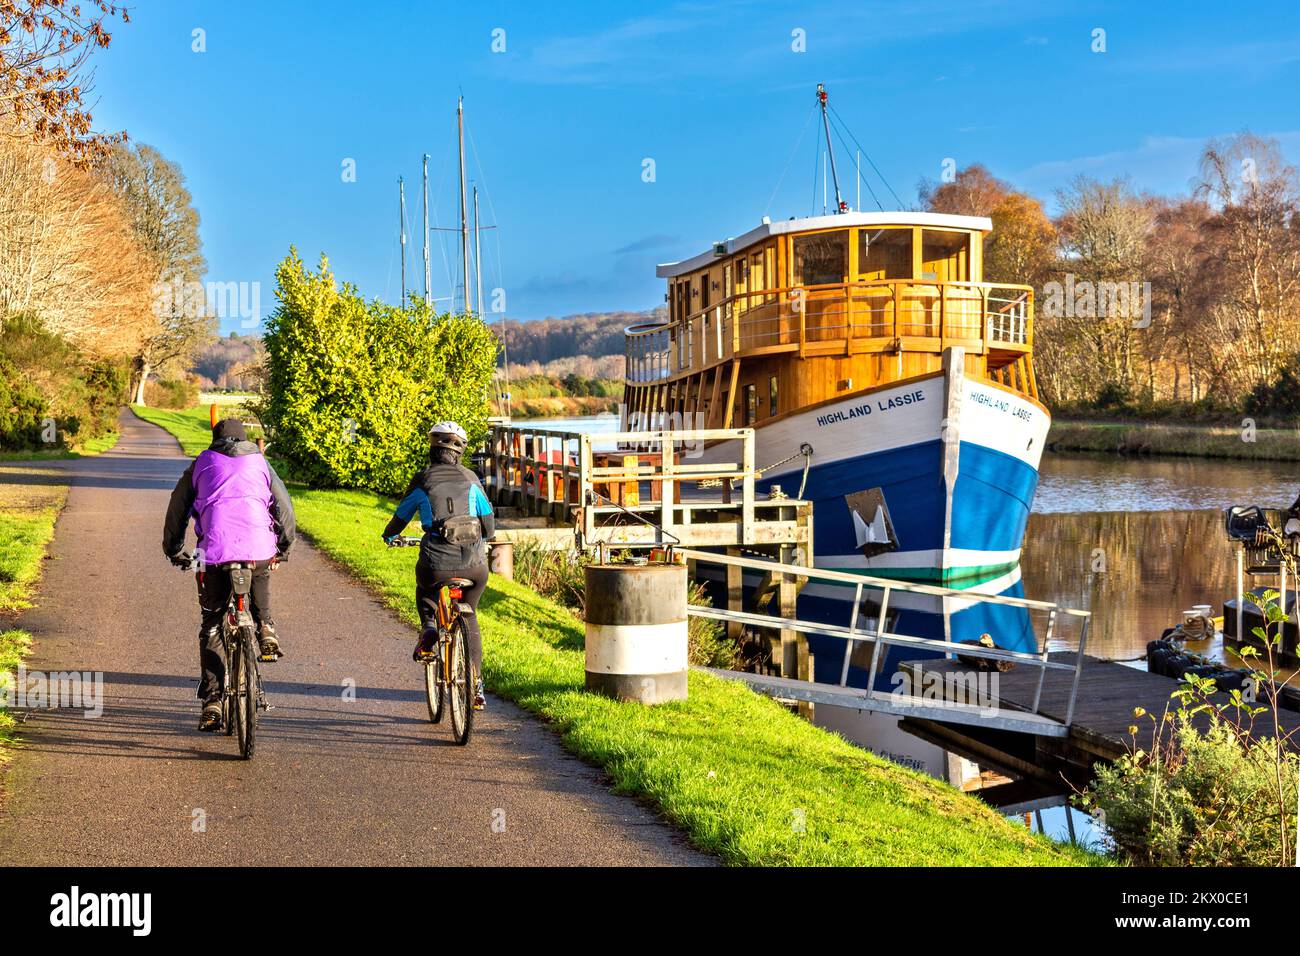 Caledonian Canal Dochgarroch Inverness Herbstradrundfahrt mit Radfahrern, die am Restaurantschiff Highland Lassie vorbeifahren Stockfoto